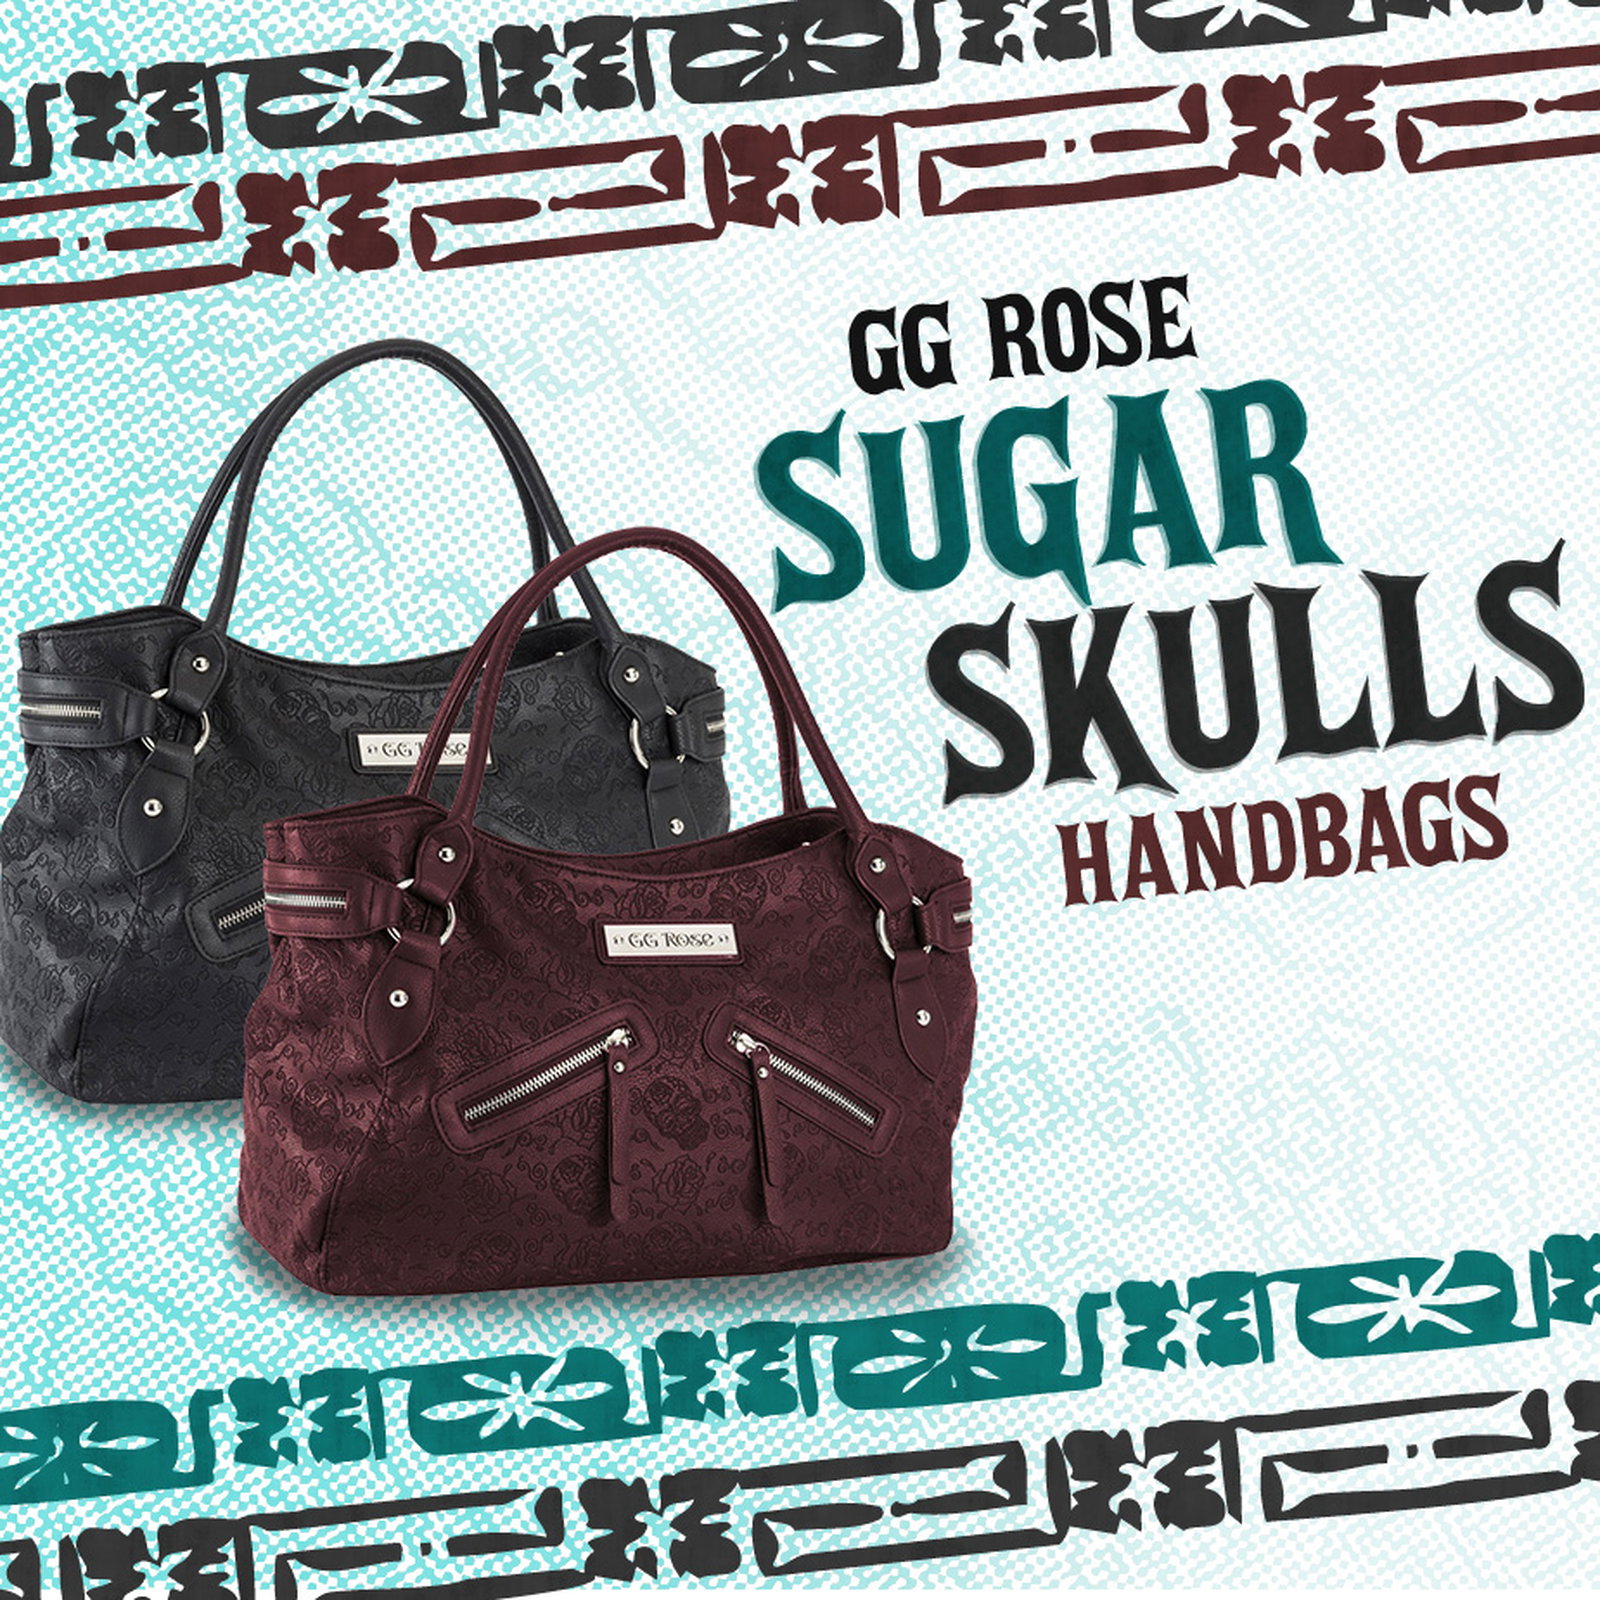 gg rose sugar skull handbag